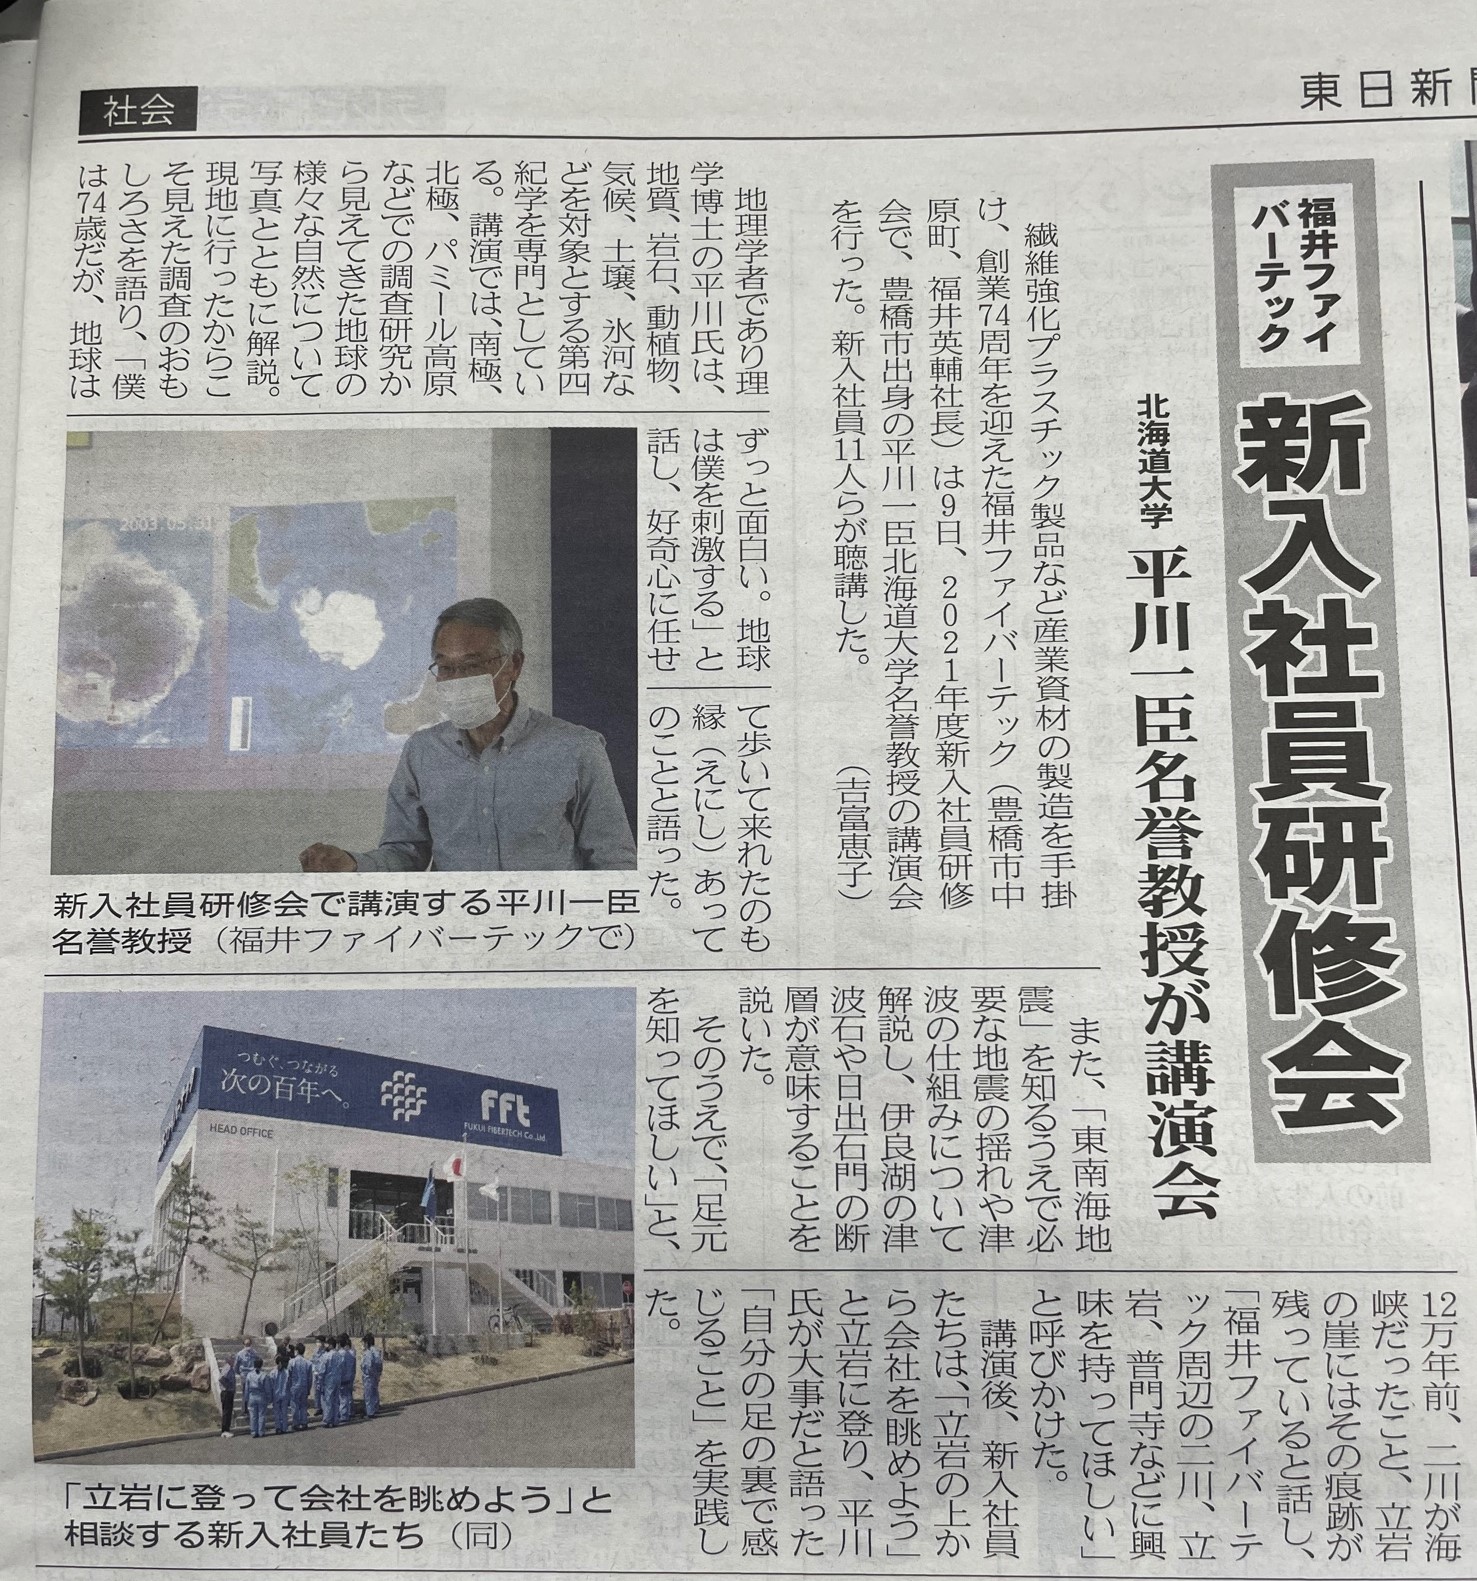 4月10日東日新聞に新入社員研修会について掲載されました